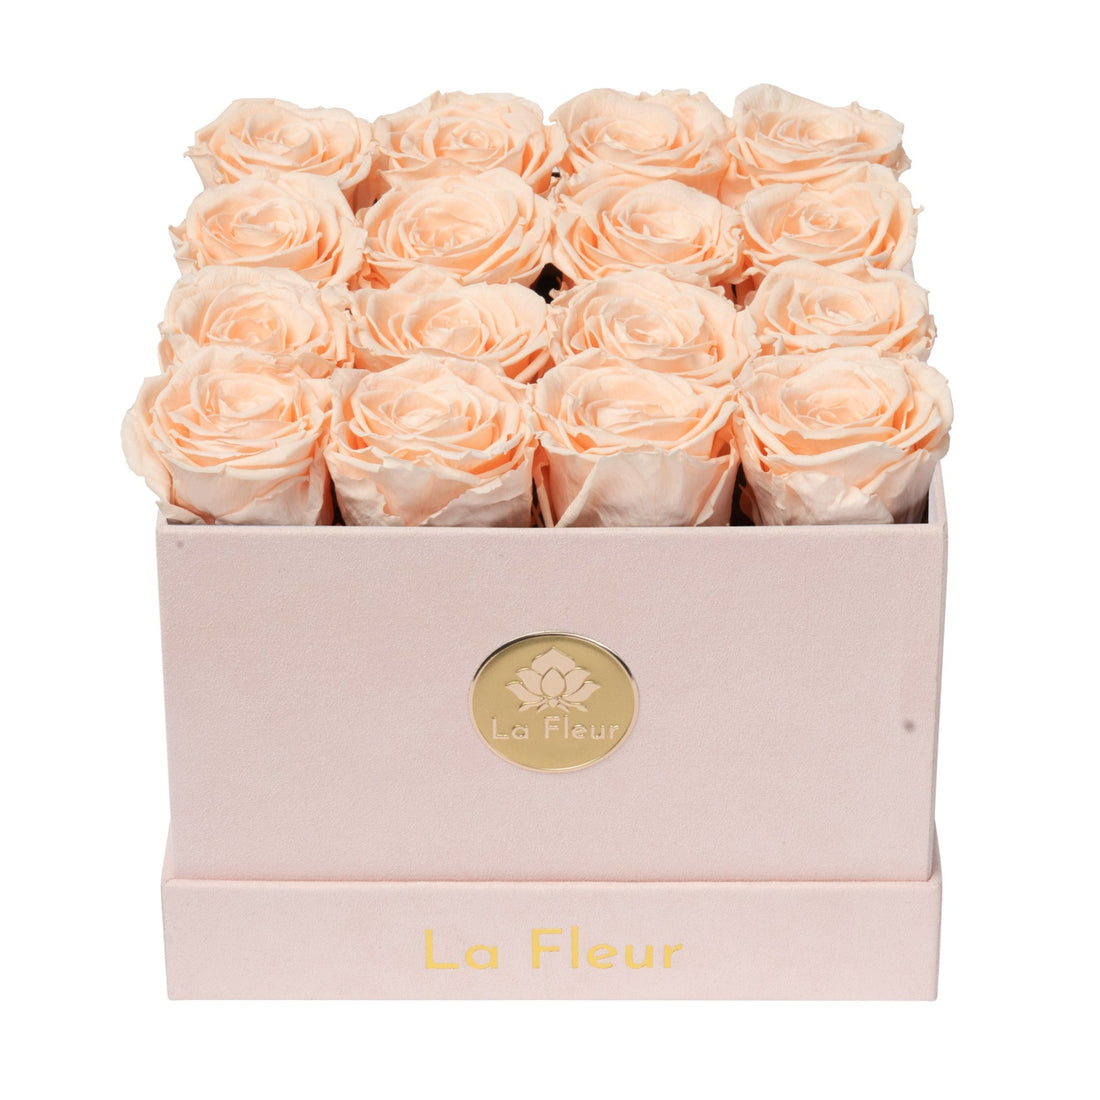 Petite Square - Blush Velvet by La Fleur Lifetime Flowers